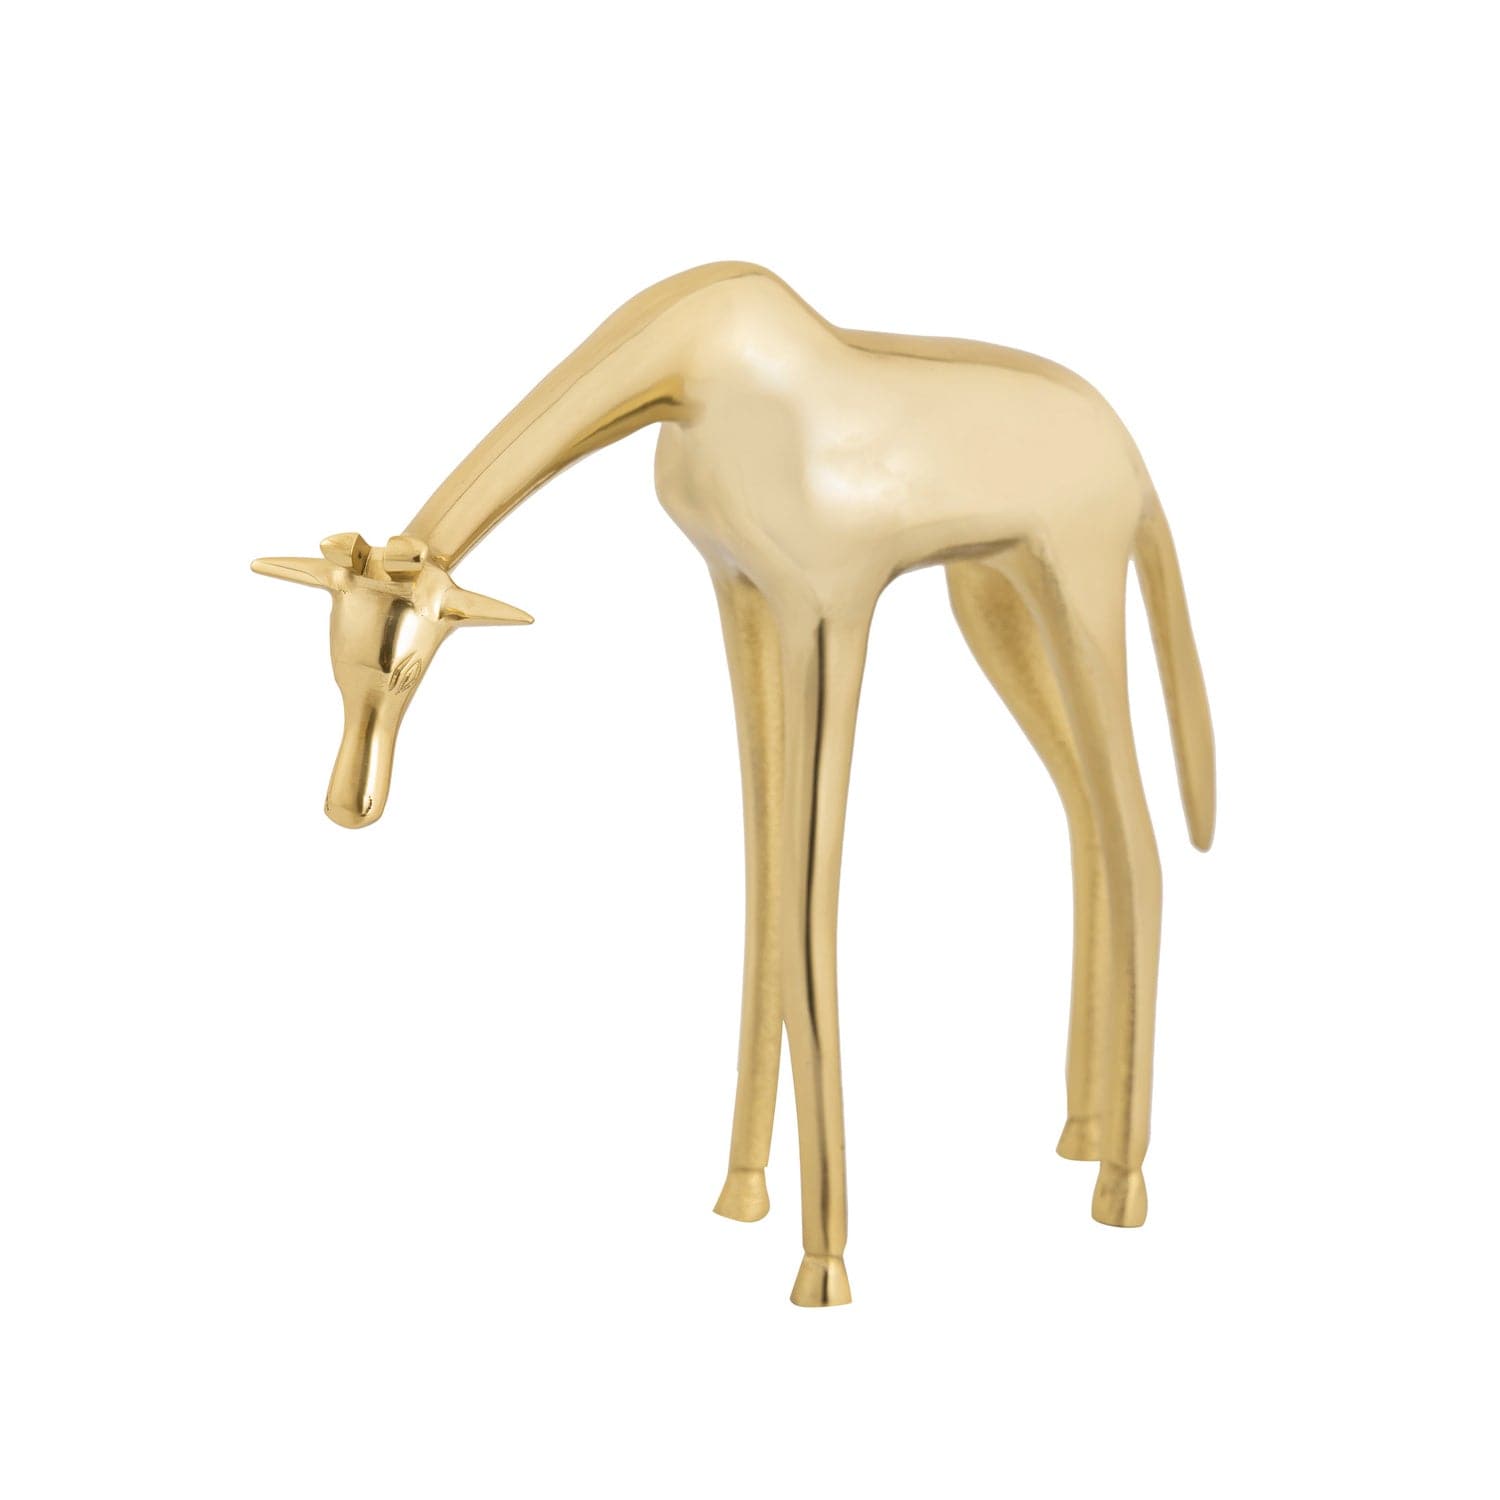 ELK Home - H0807-9267 - Sculpture - Brass Giraffe - Polished Brass